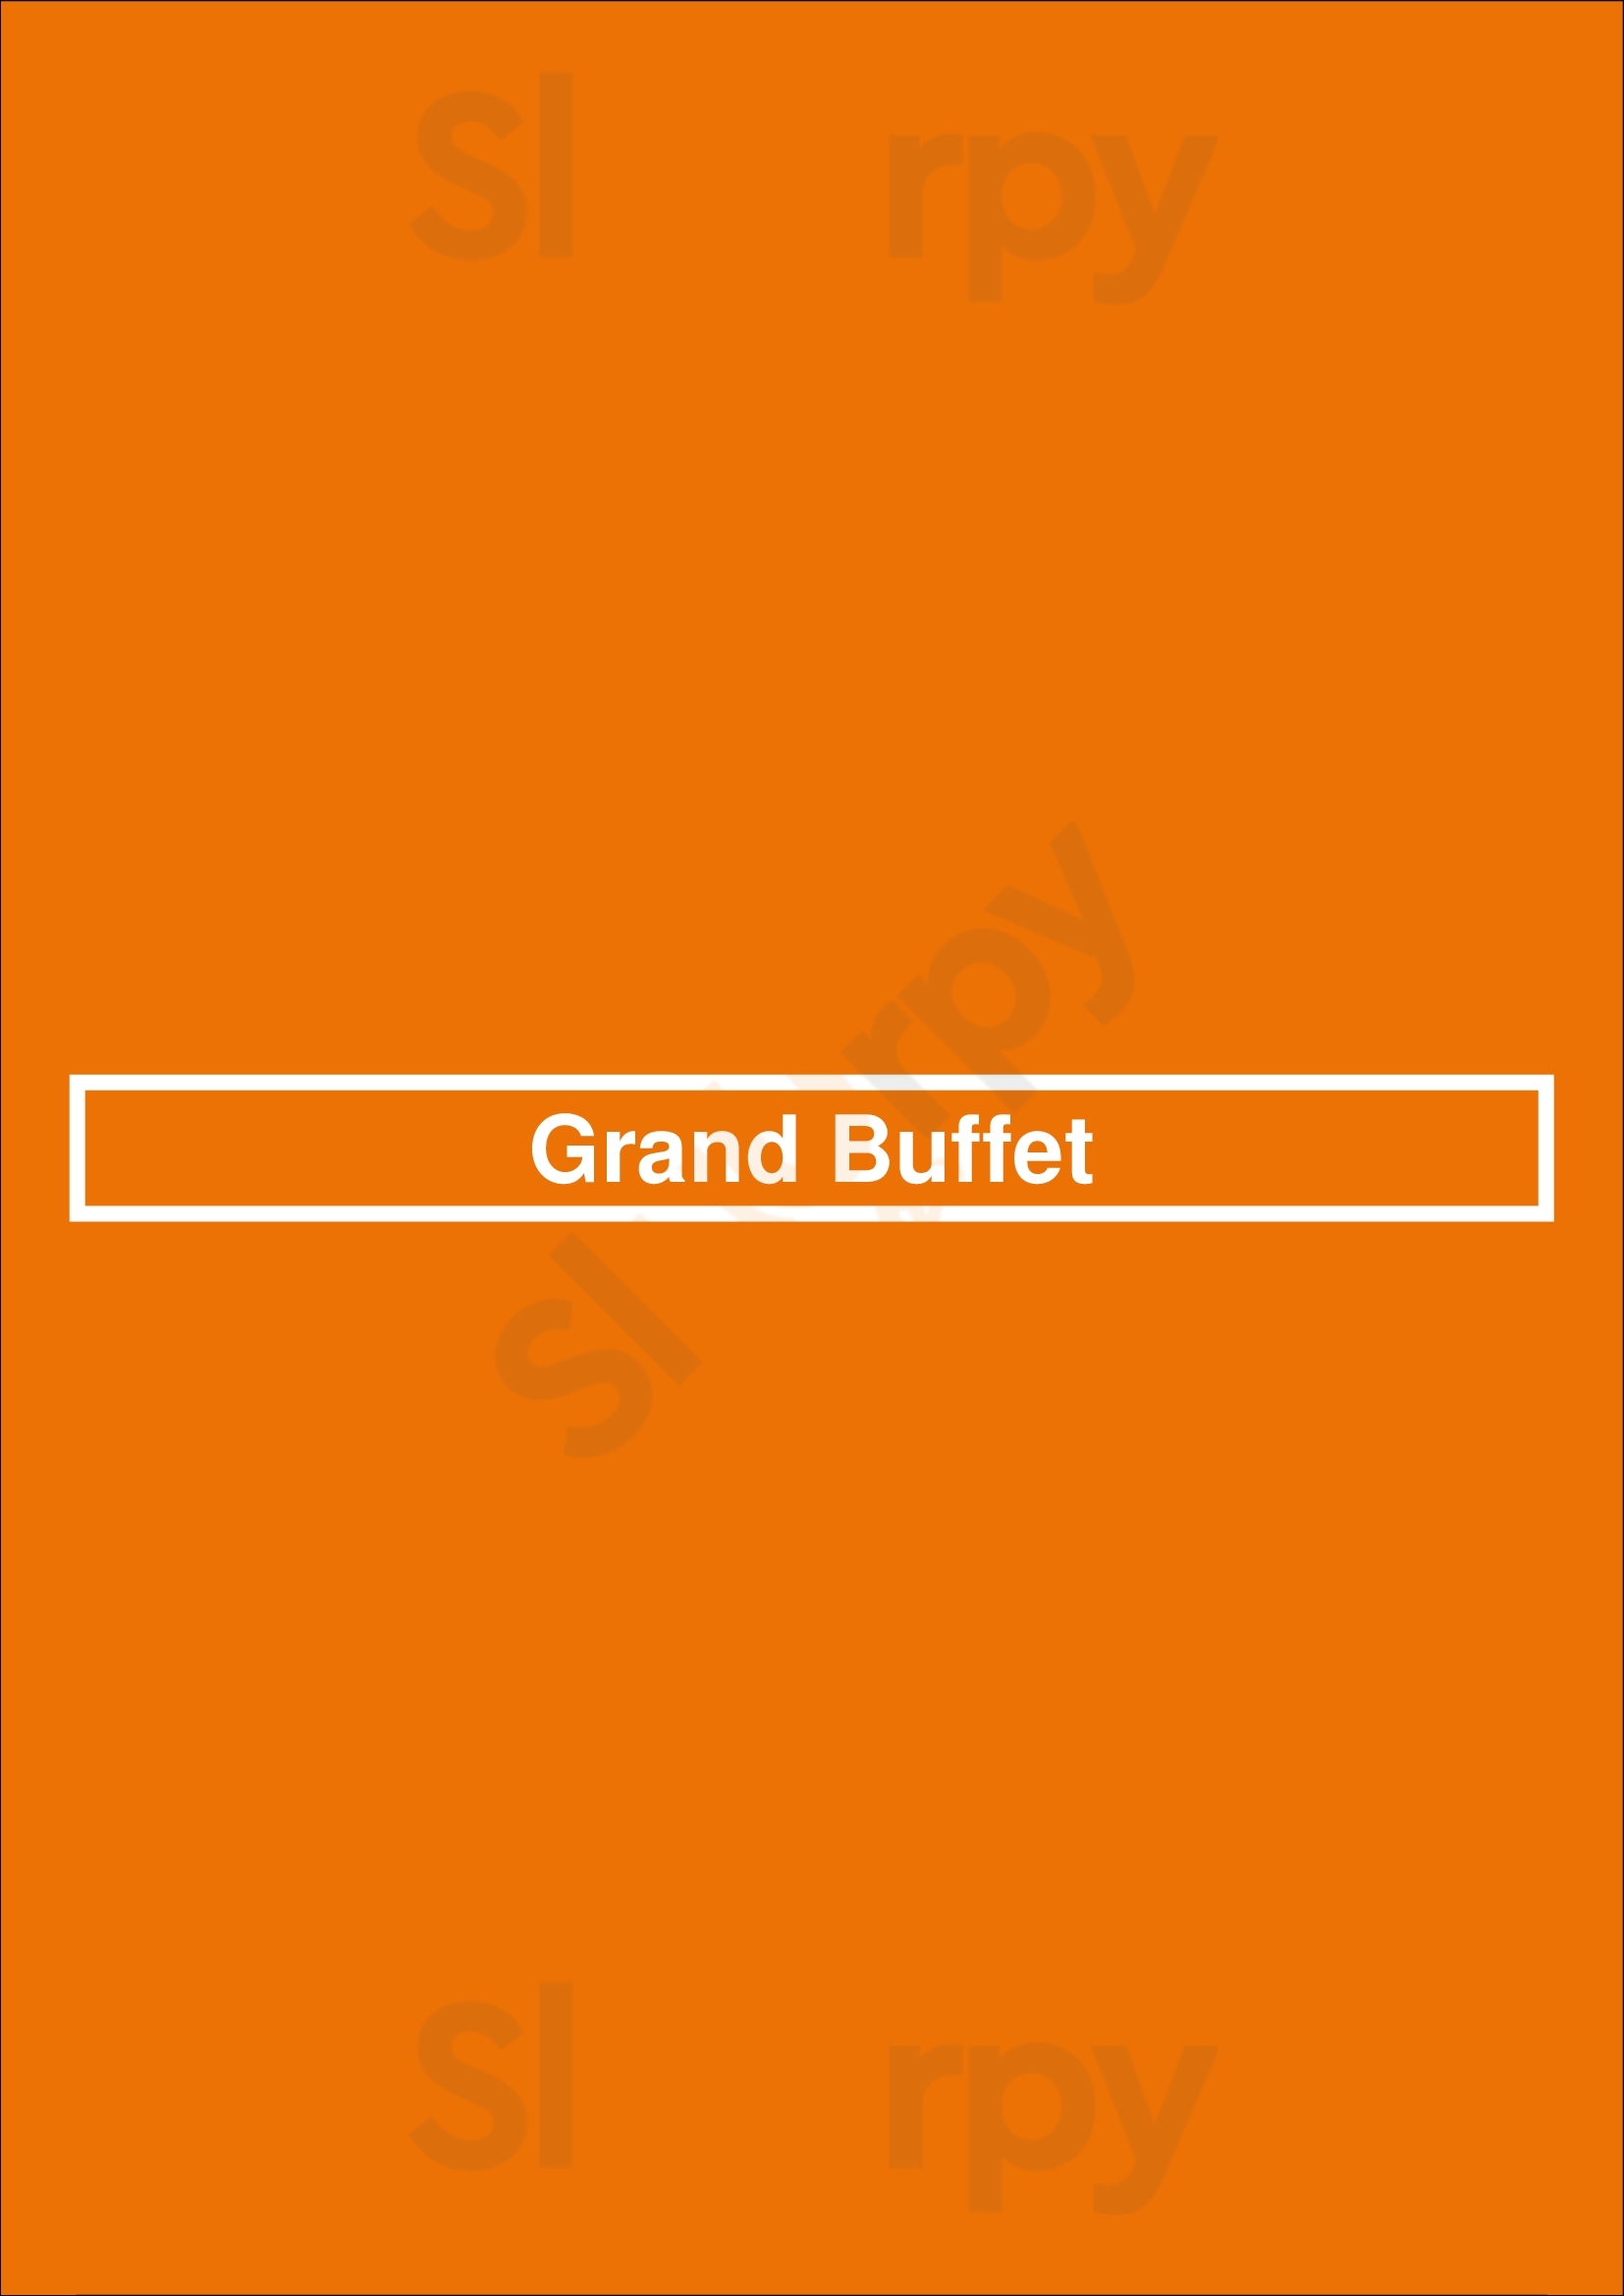 Grand Buffet Whittier Menu - 1